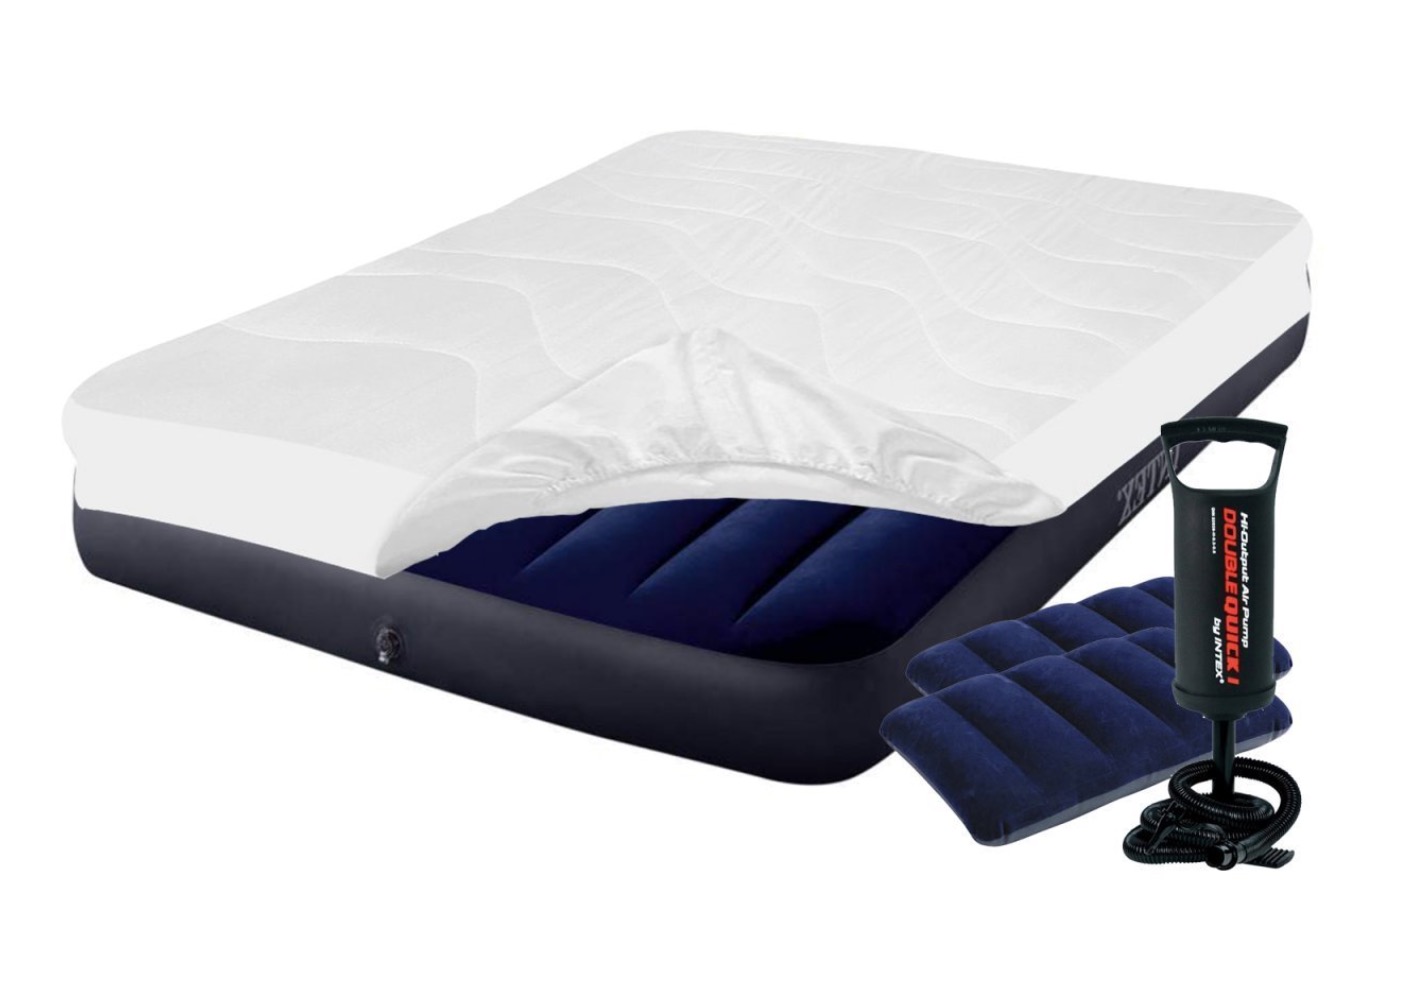 

Двухместный надувной матрас с насосом Intex Classic Downy наматрасник и подушки Синий 152х203х25 см (IP-172749)